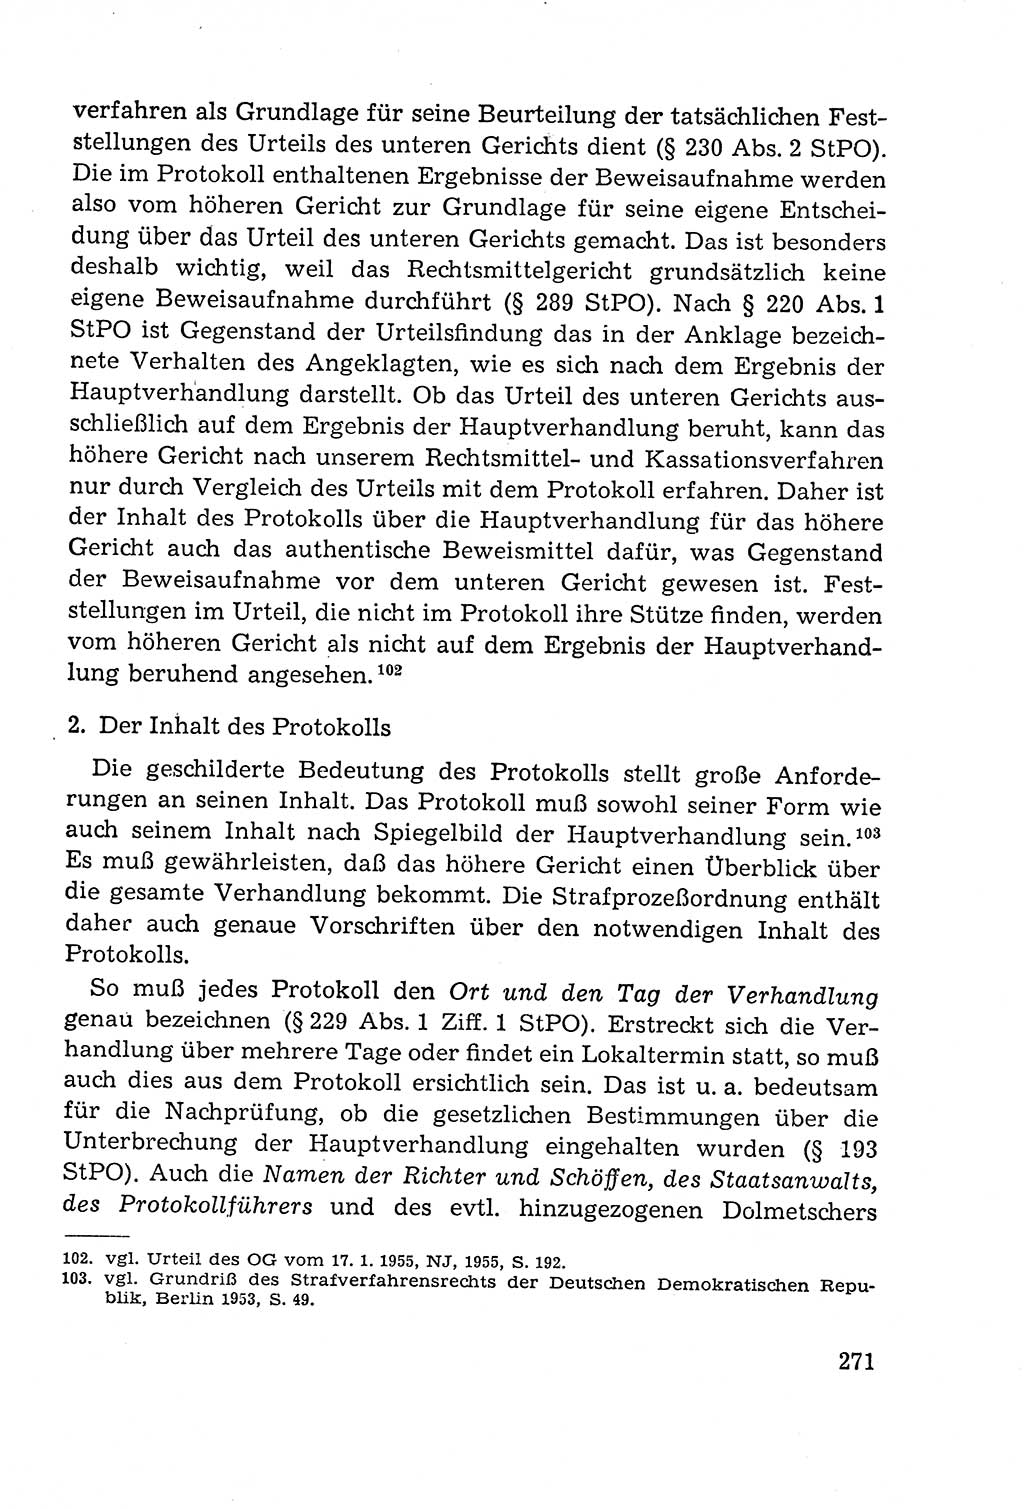 Leitfaden des StrafprozeÃŸrechts der Deutschen Demokratischen Republik (DDR) 1959, Seite 271 (LF StPR DDR 1959, S. 271)